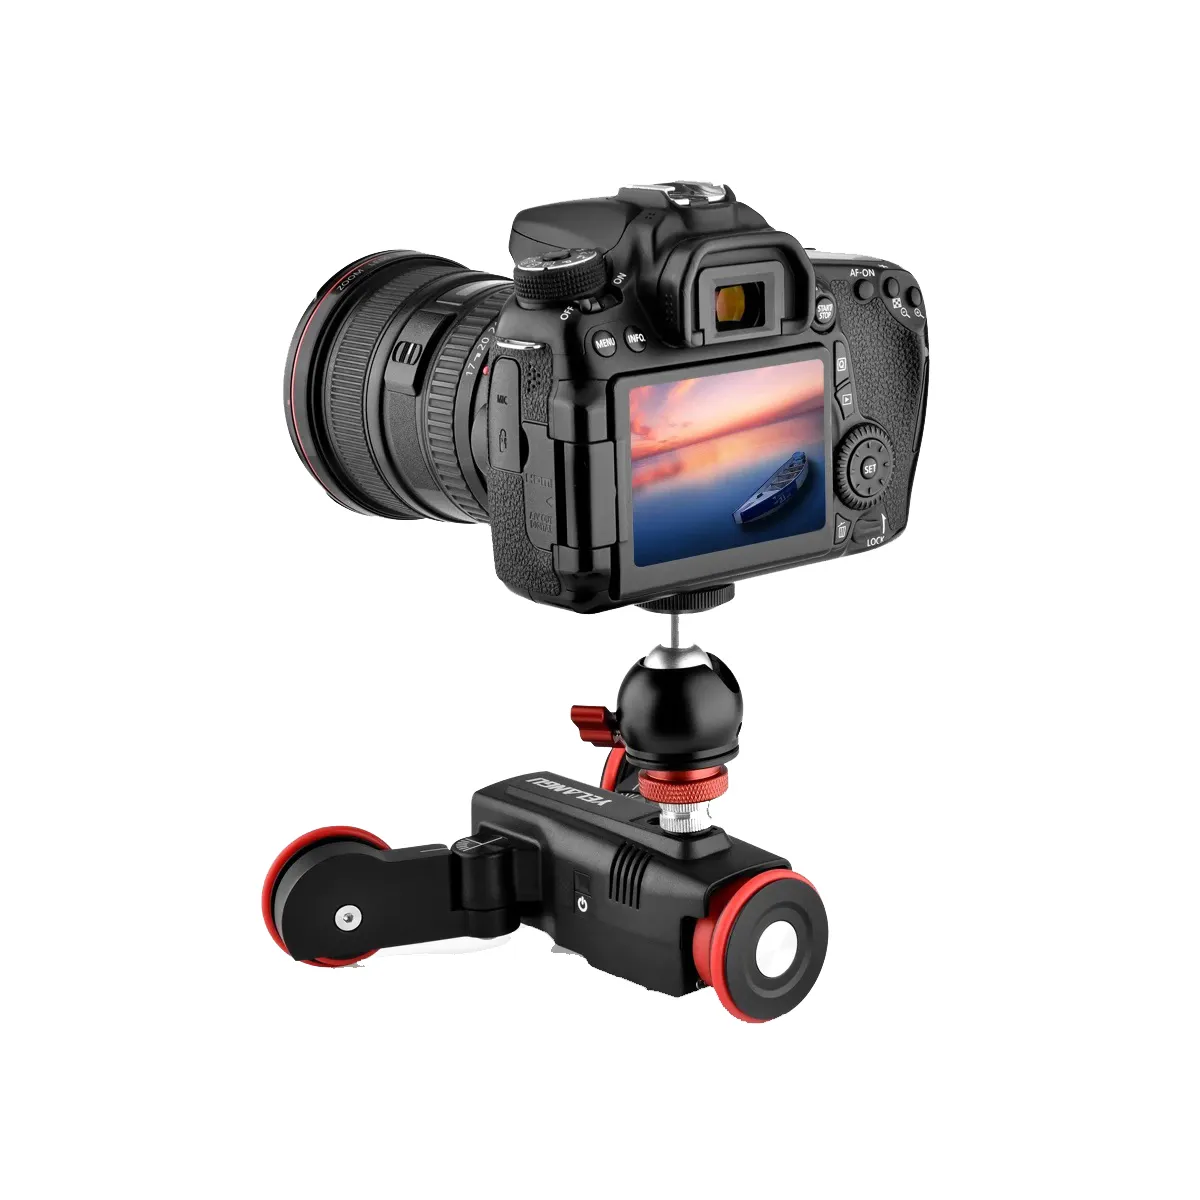 YELANGU L5G cursore per fotocamera motorizzato sistemi di binari per auto con carrello Video automatico per fotocamera DSLR Sony iPhone con telecomando